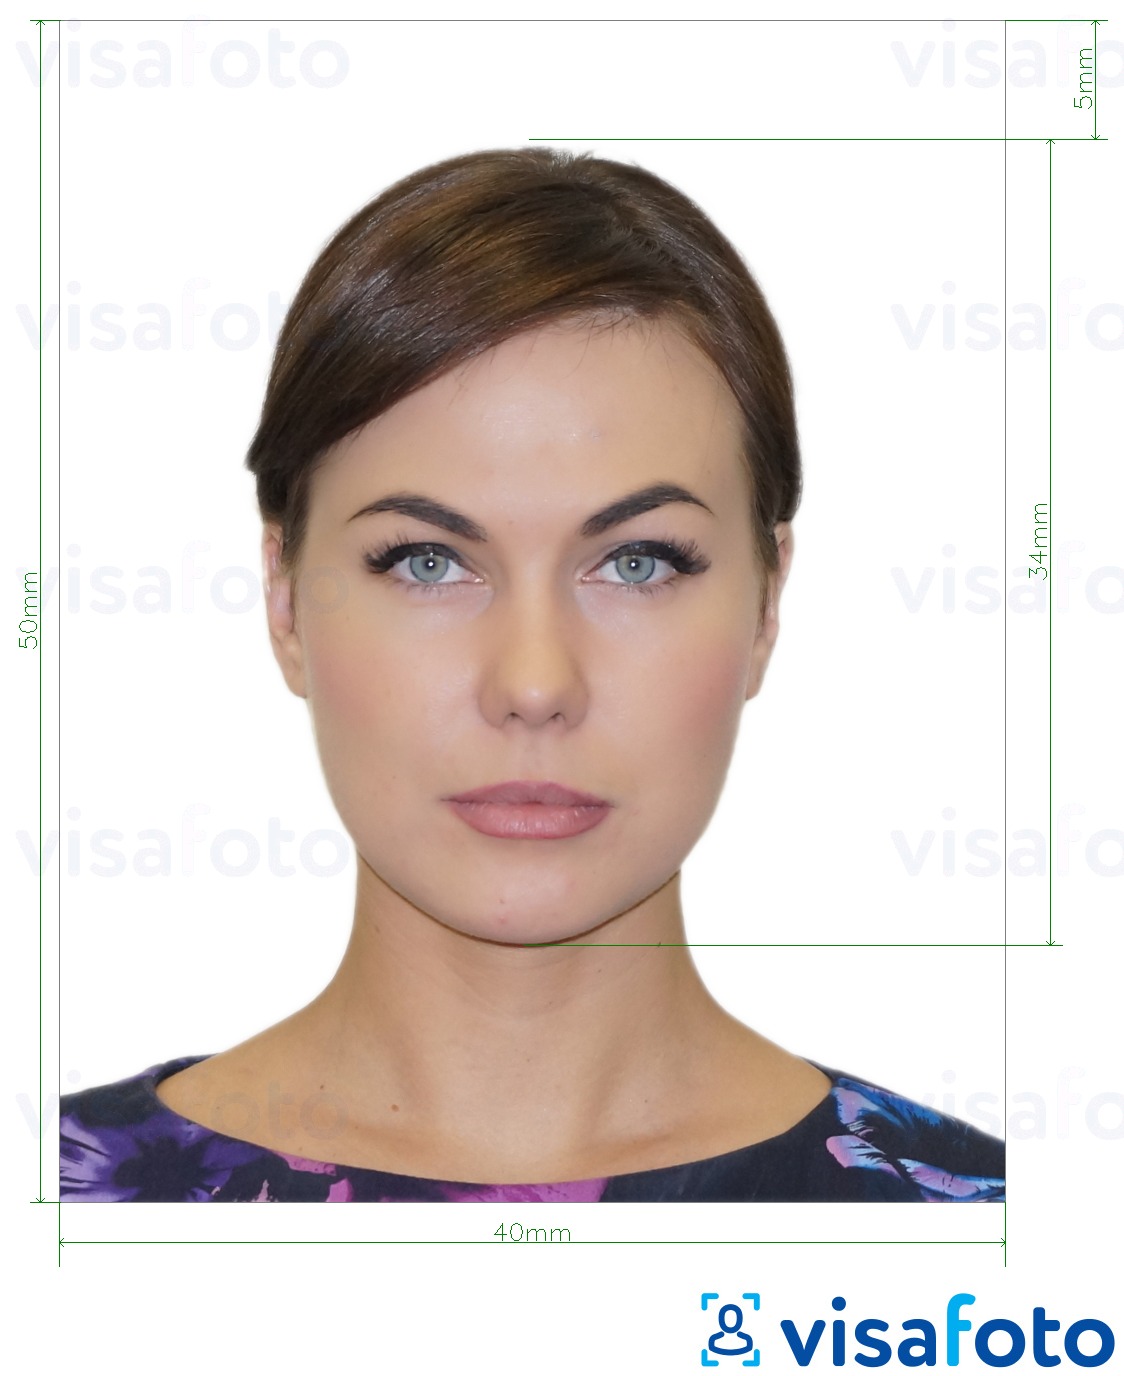 Пример за снимка за Албания електронна виза 4х5 см с точна спецификация за размер